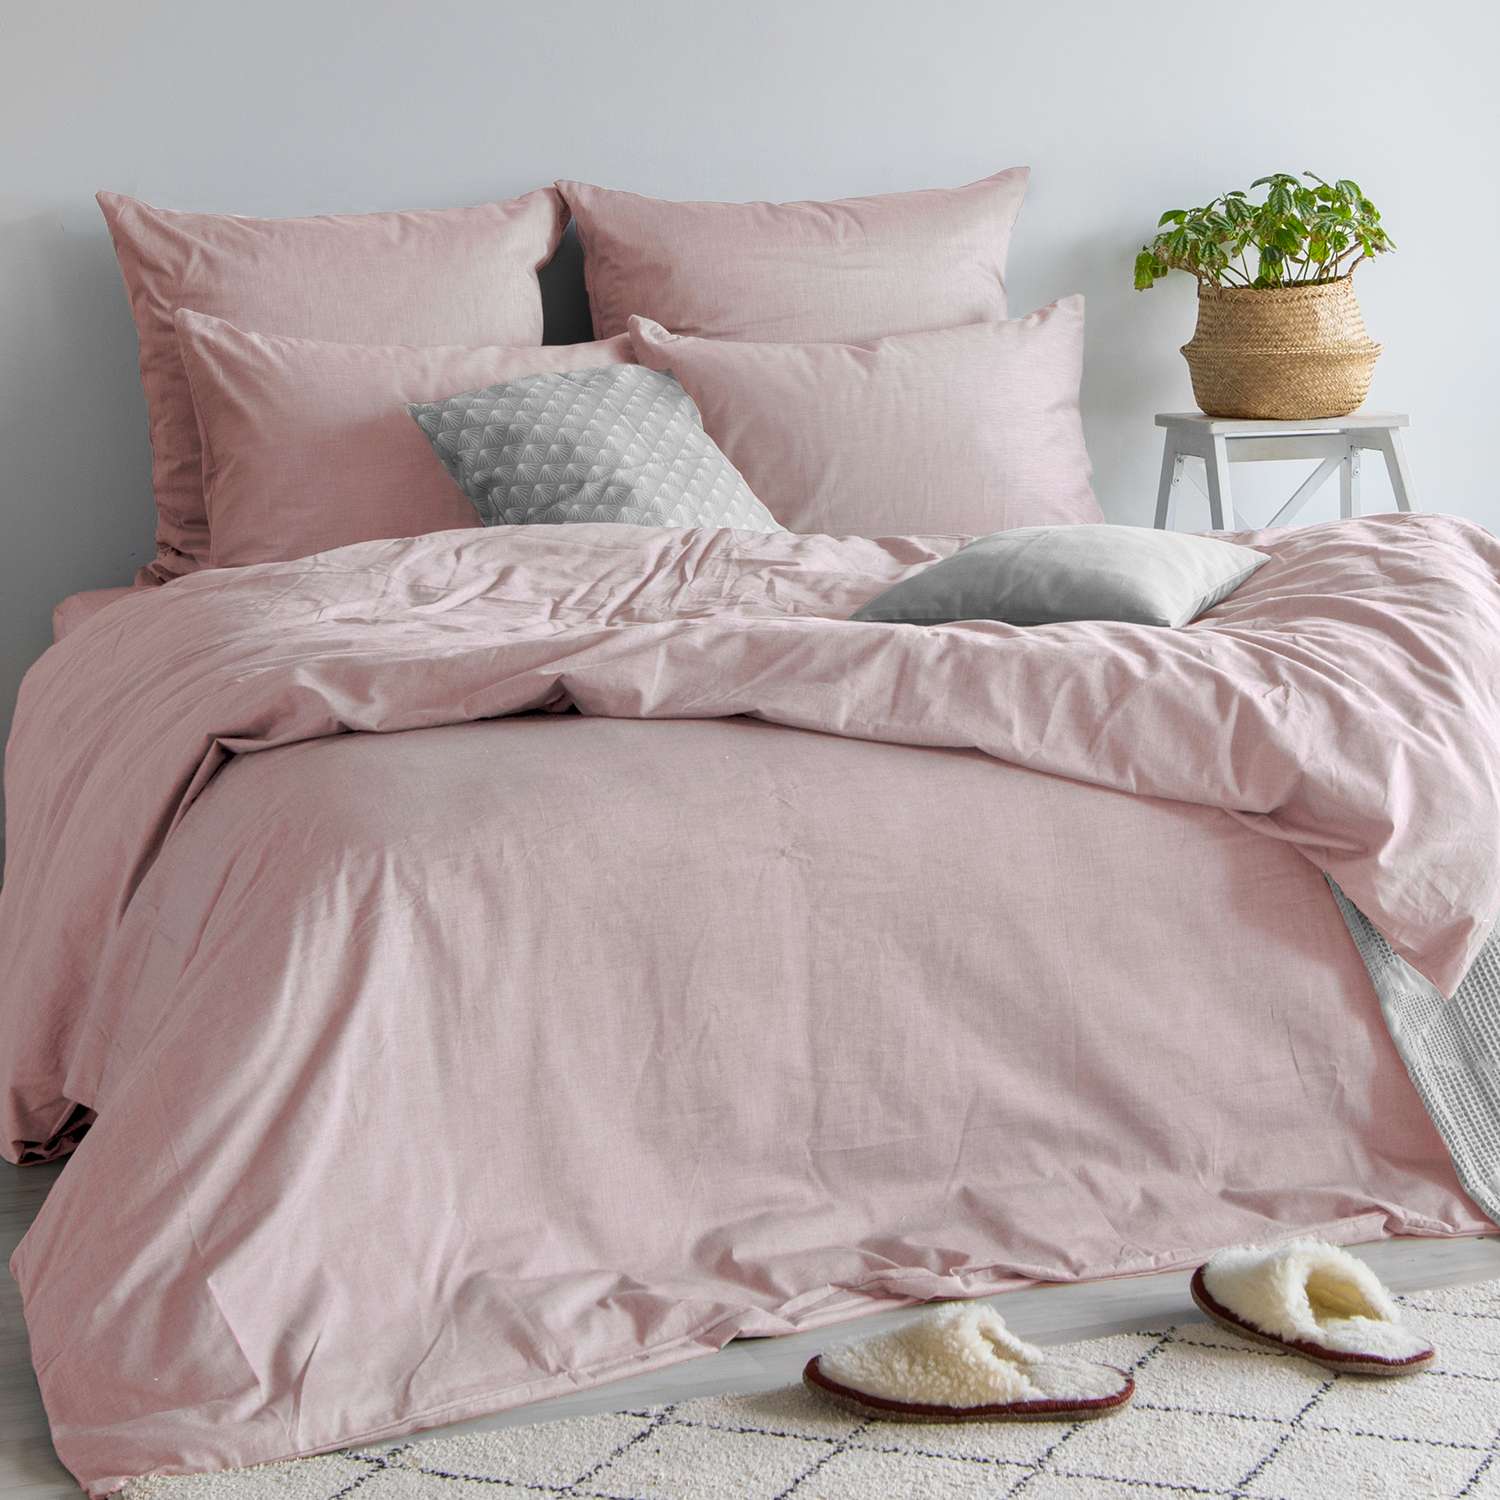 Комплект постельного белья Absolut 2СП Desert Rose наволочки 70х70см меланж - фото 2